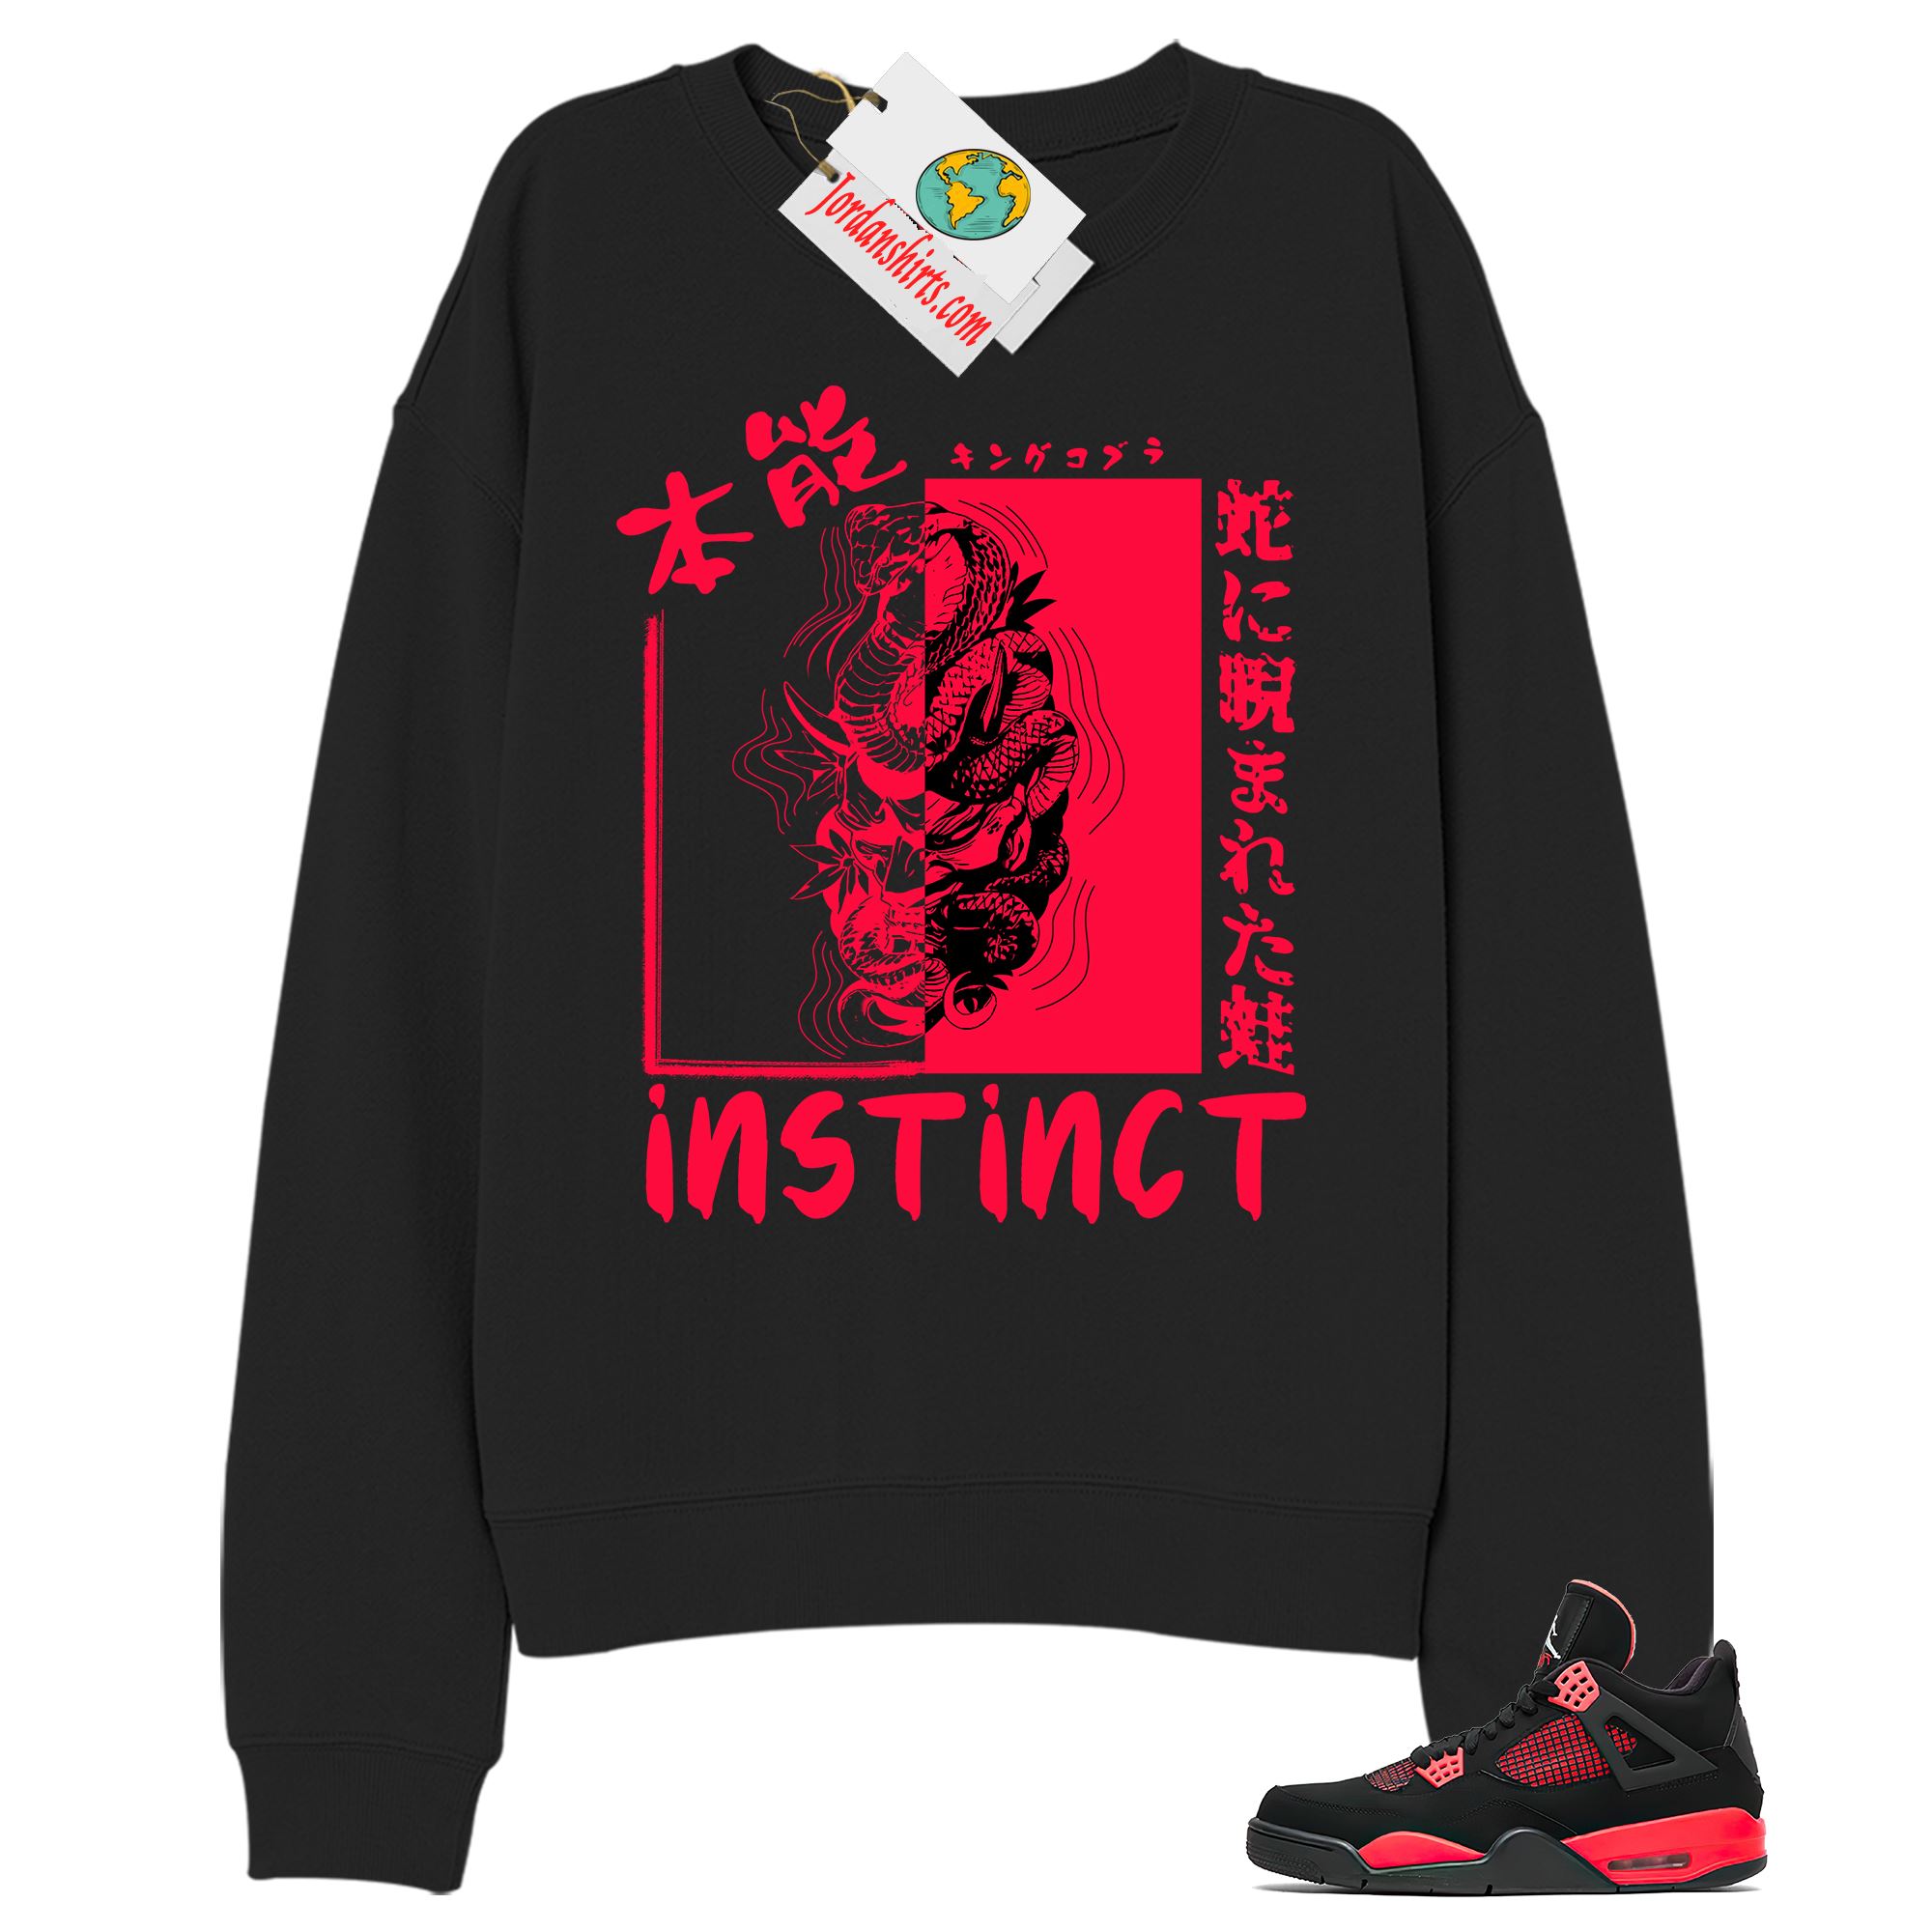 Jordan 4 Sweatshirt, Instinct Fearless Snake Black Sweatshirt Air Jordan 4 Red Thunder 4s Full Size Up To 5xl